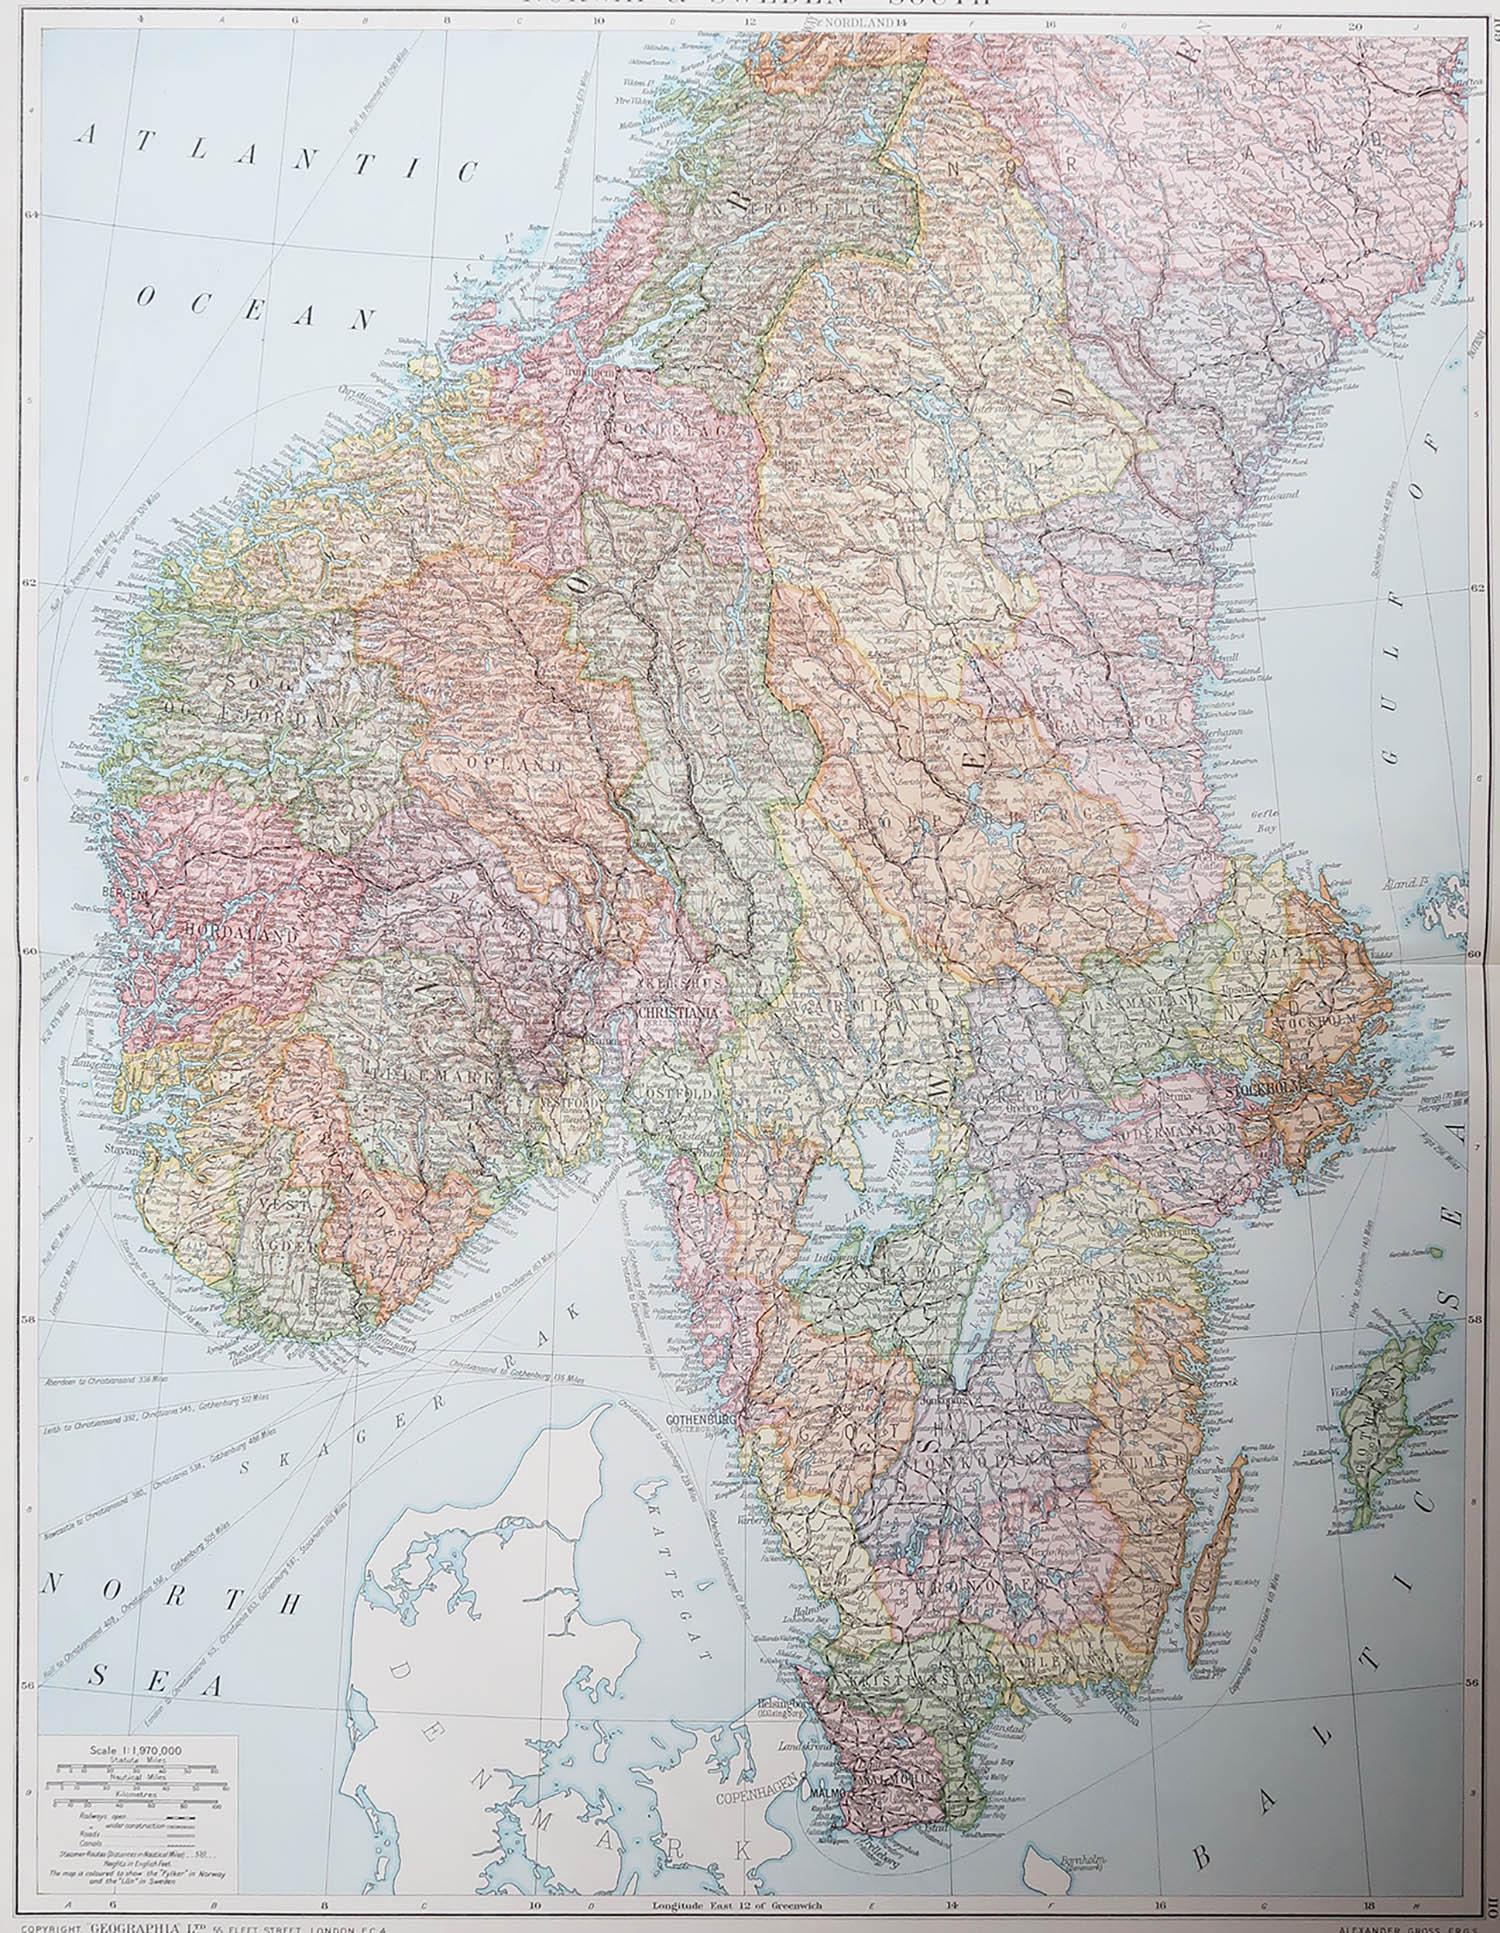 Tolle Karte von Schweden und Norwegen

Originalfarbe. Guter Zustand

Herausgegeben von Alexander Gross

Ungerahmt.








